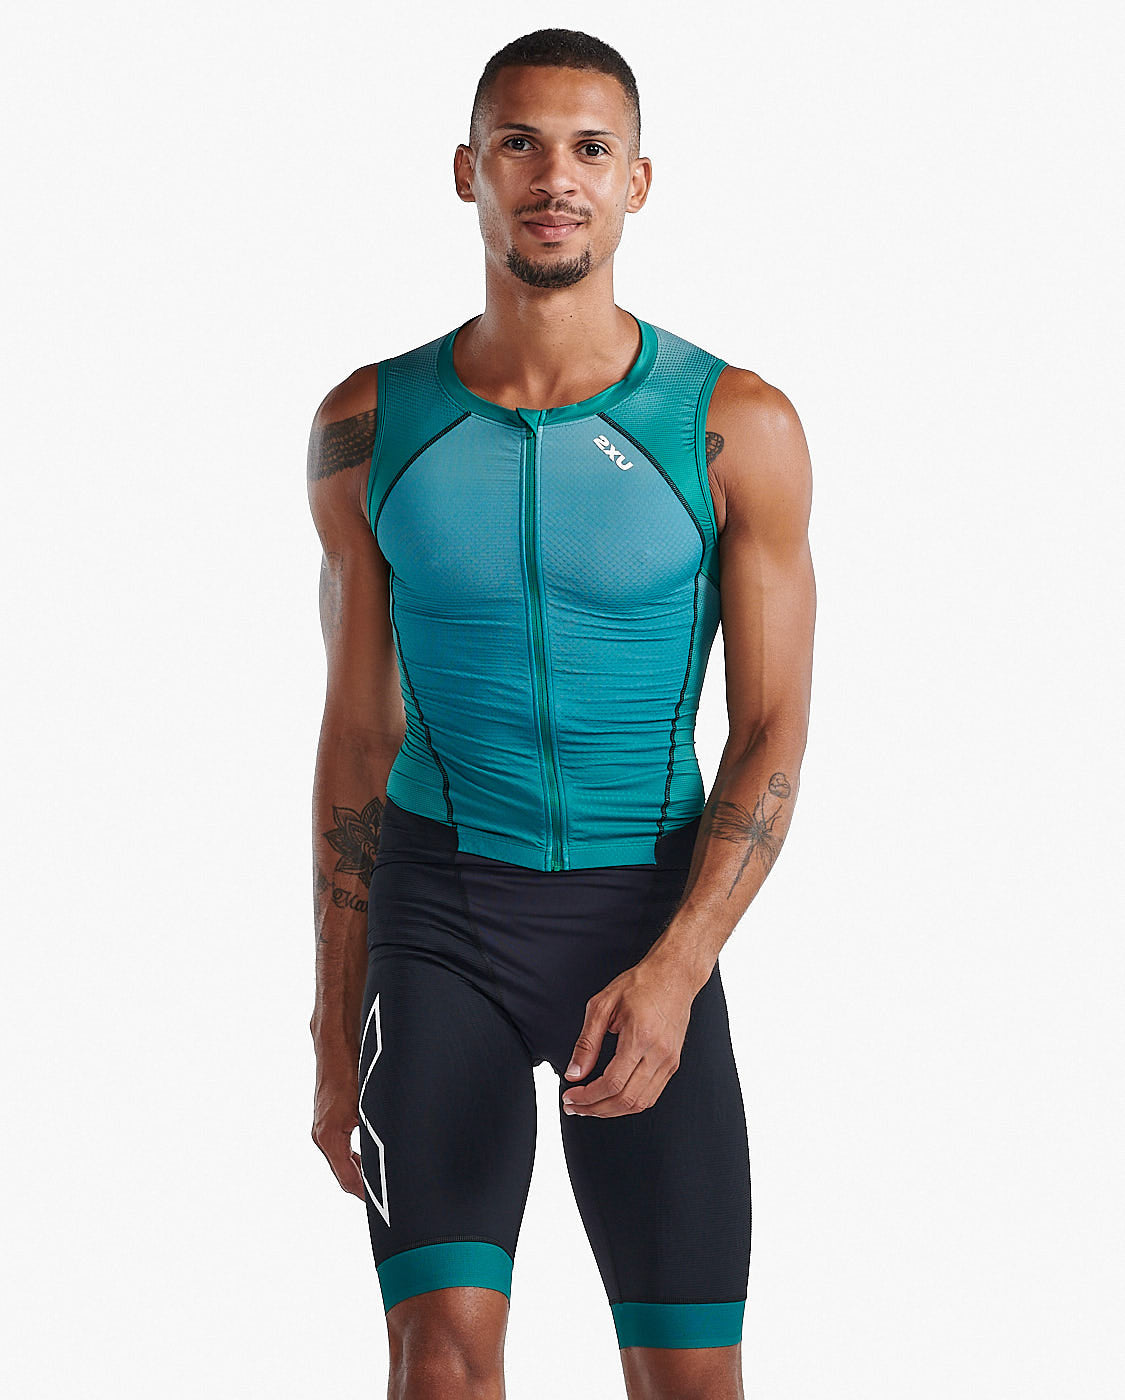 Compression Clothing for Gym, Running, & Triathlon | 2XU – 2XU US